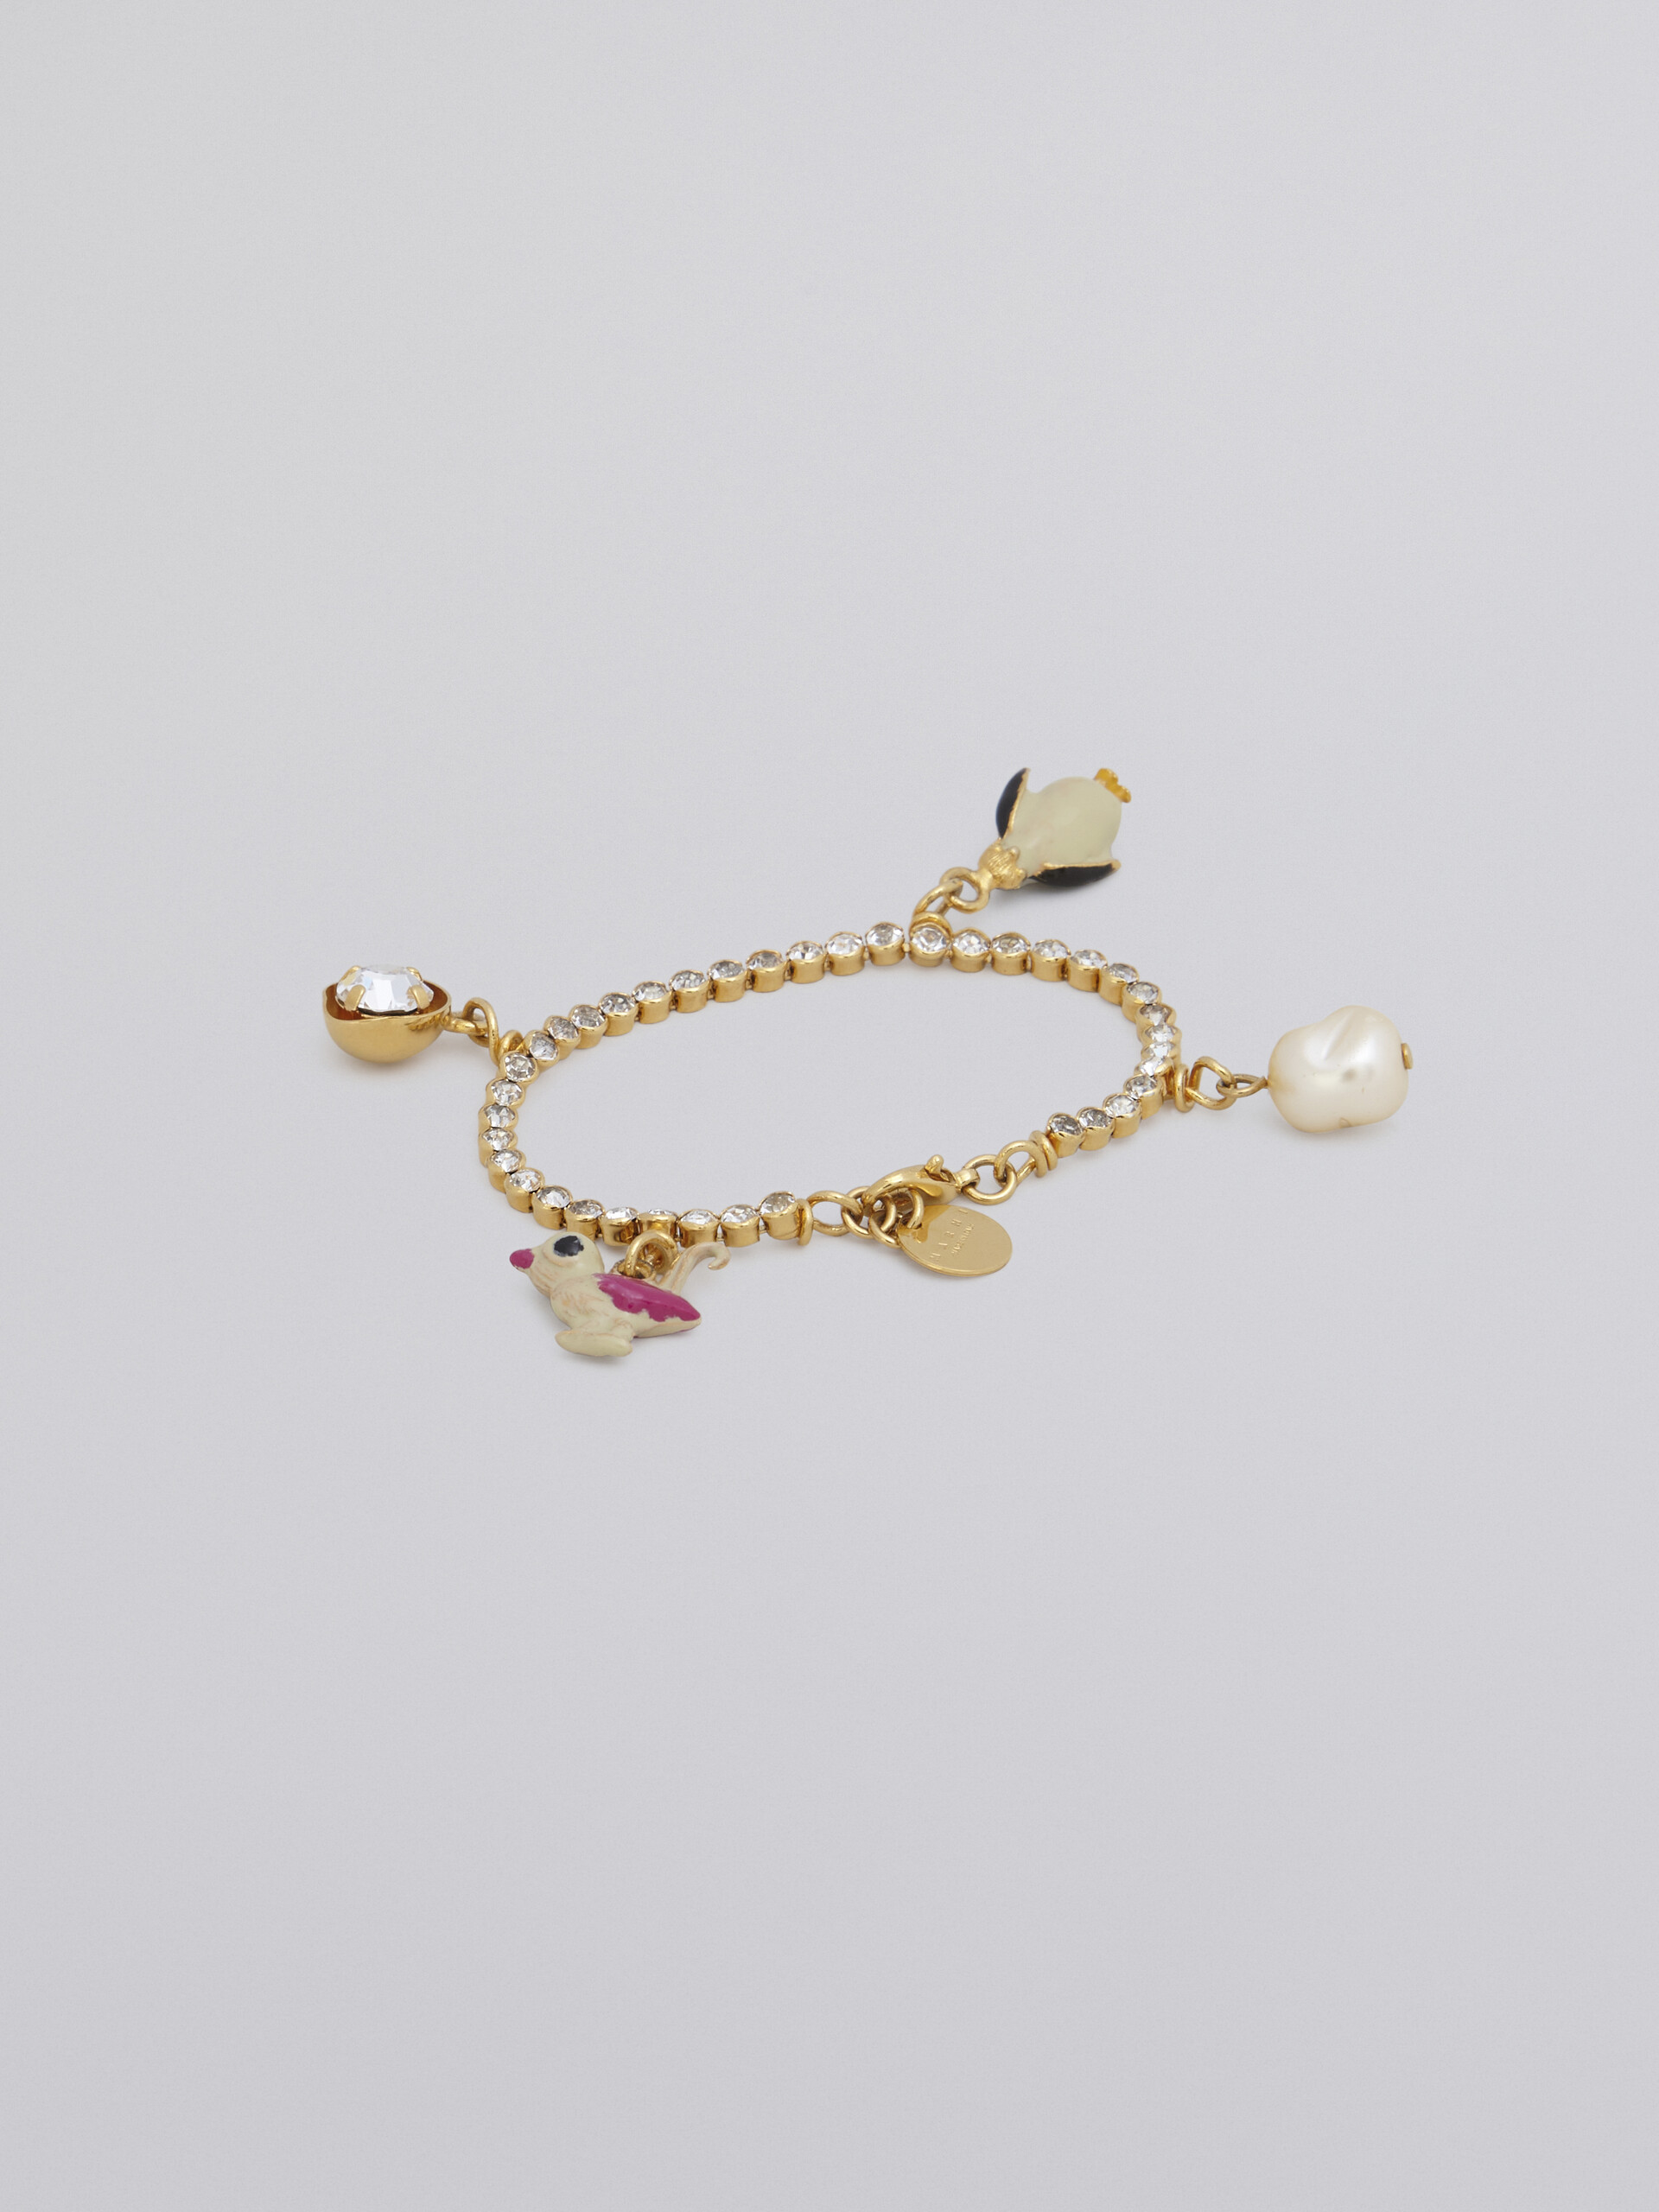 Brass FOUND bracelet with charms - Bracelets - Image 3